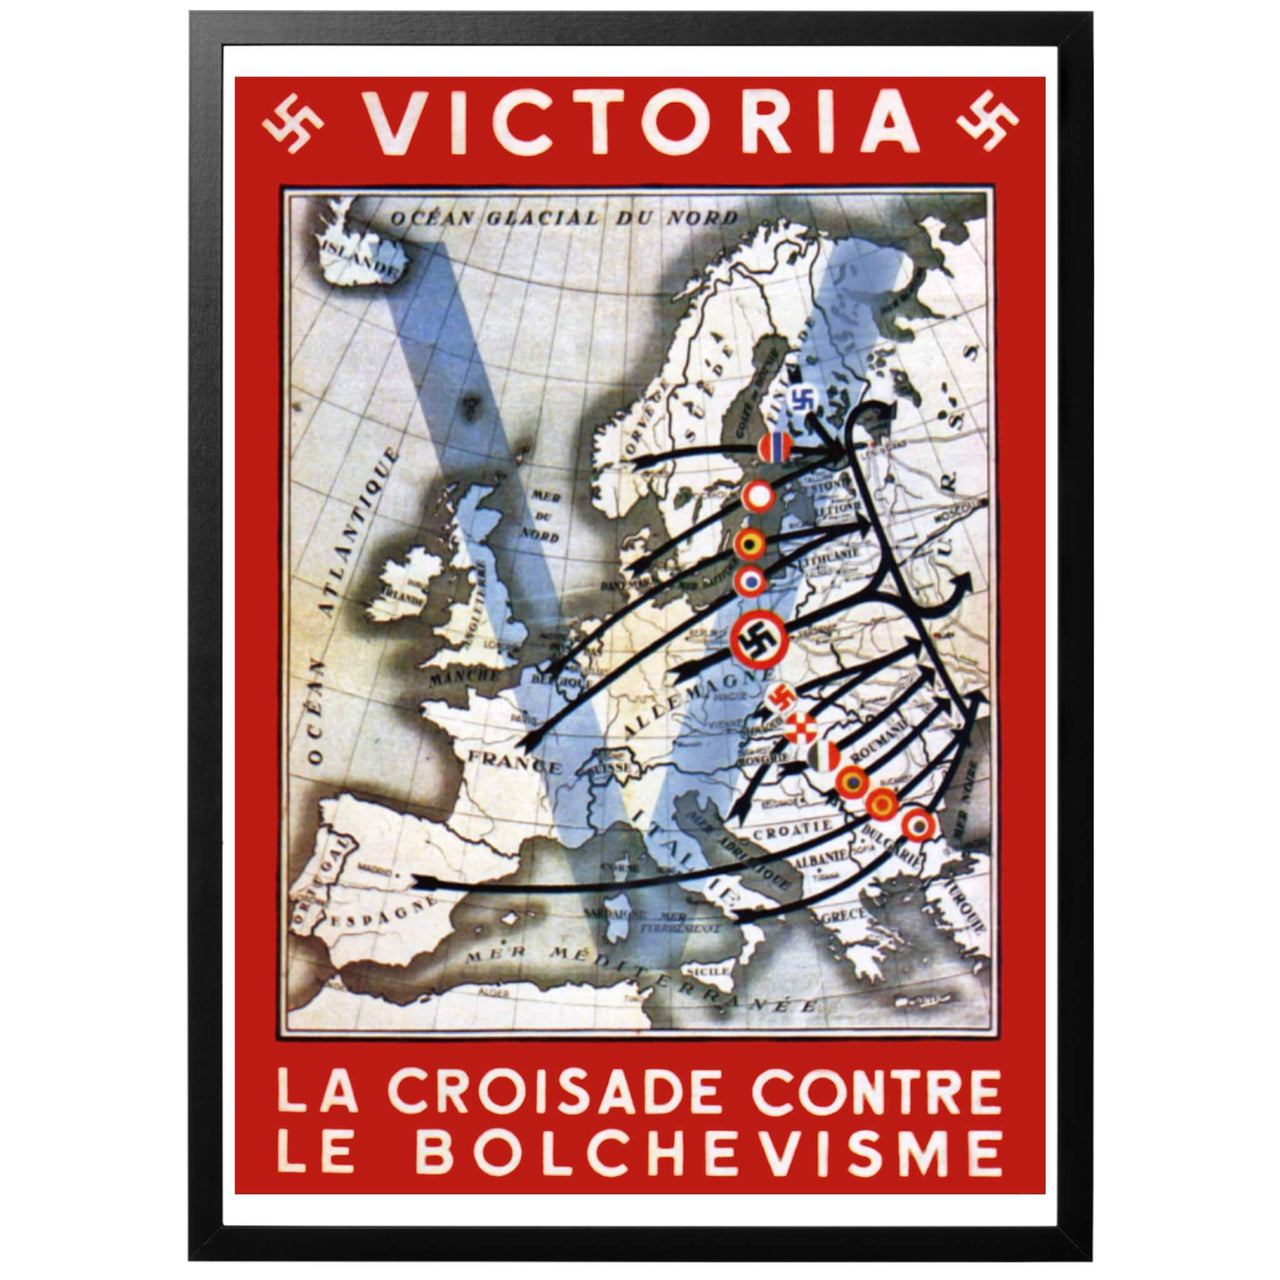 Victoria - La Croisade contre le bolchevisme/Seger - korståget mot bolsjevismen - En tyskvänlig, franskspråkig affisch producerad och distribuerad i Frankrike. Anfallet mot Sovjet framställs som ett pan-europeiskt korståg mot den förhatliga bolsjevismen, med Tyskland som främste kämpe. 